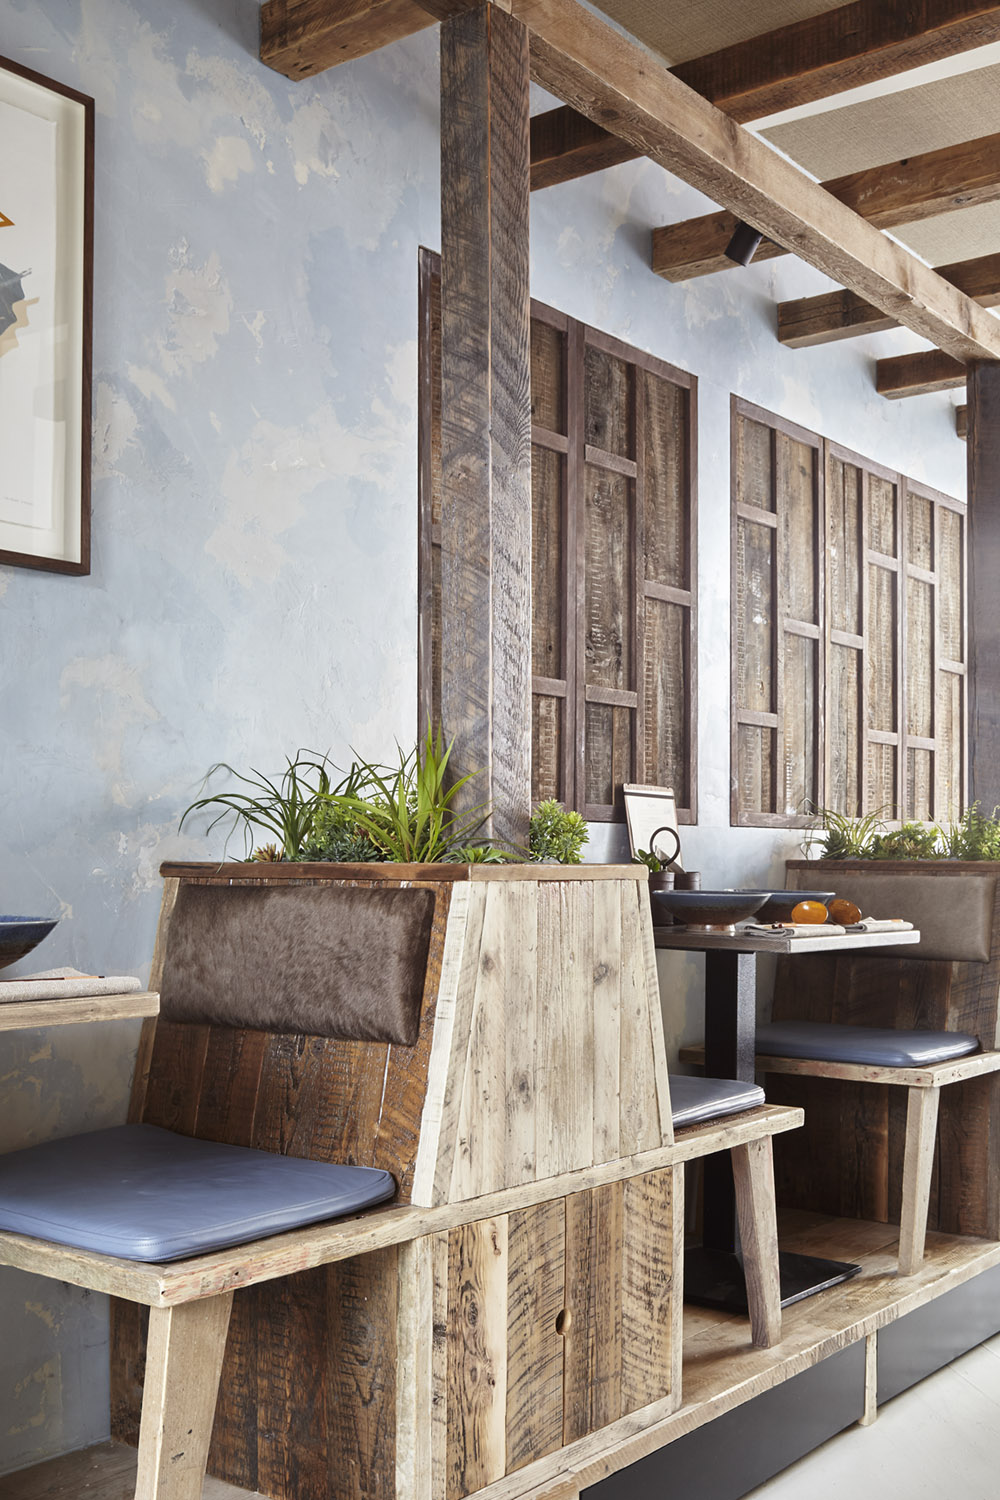 Mam_restaurant_bar_interior_design_branding_london_nottinghill_booth_seating_bespoke_wooden_vietnamese